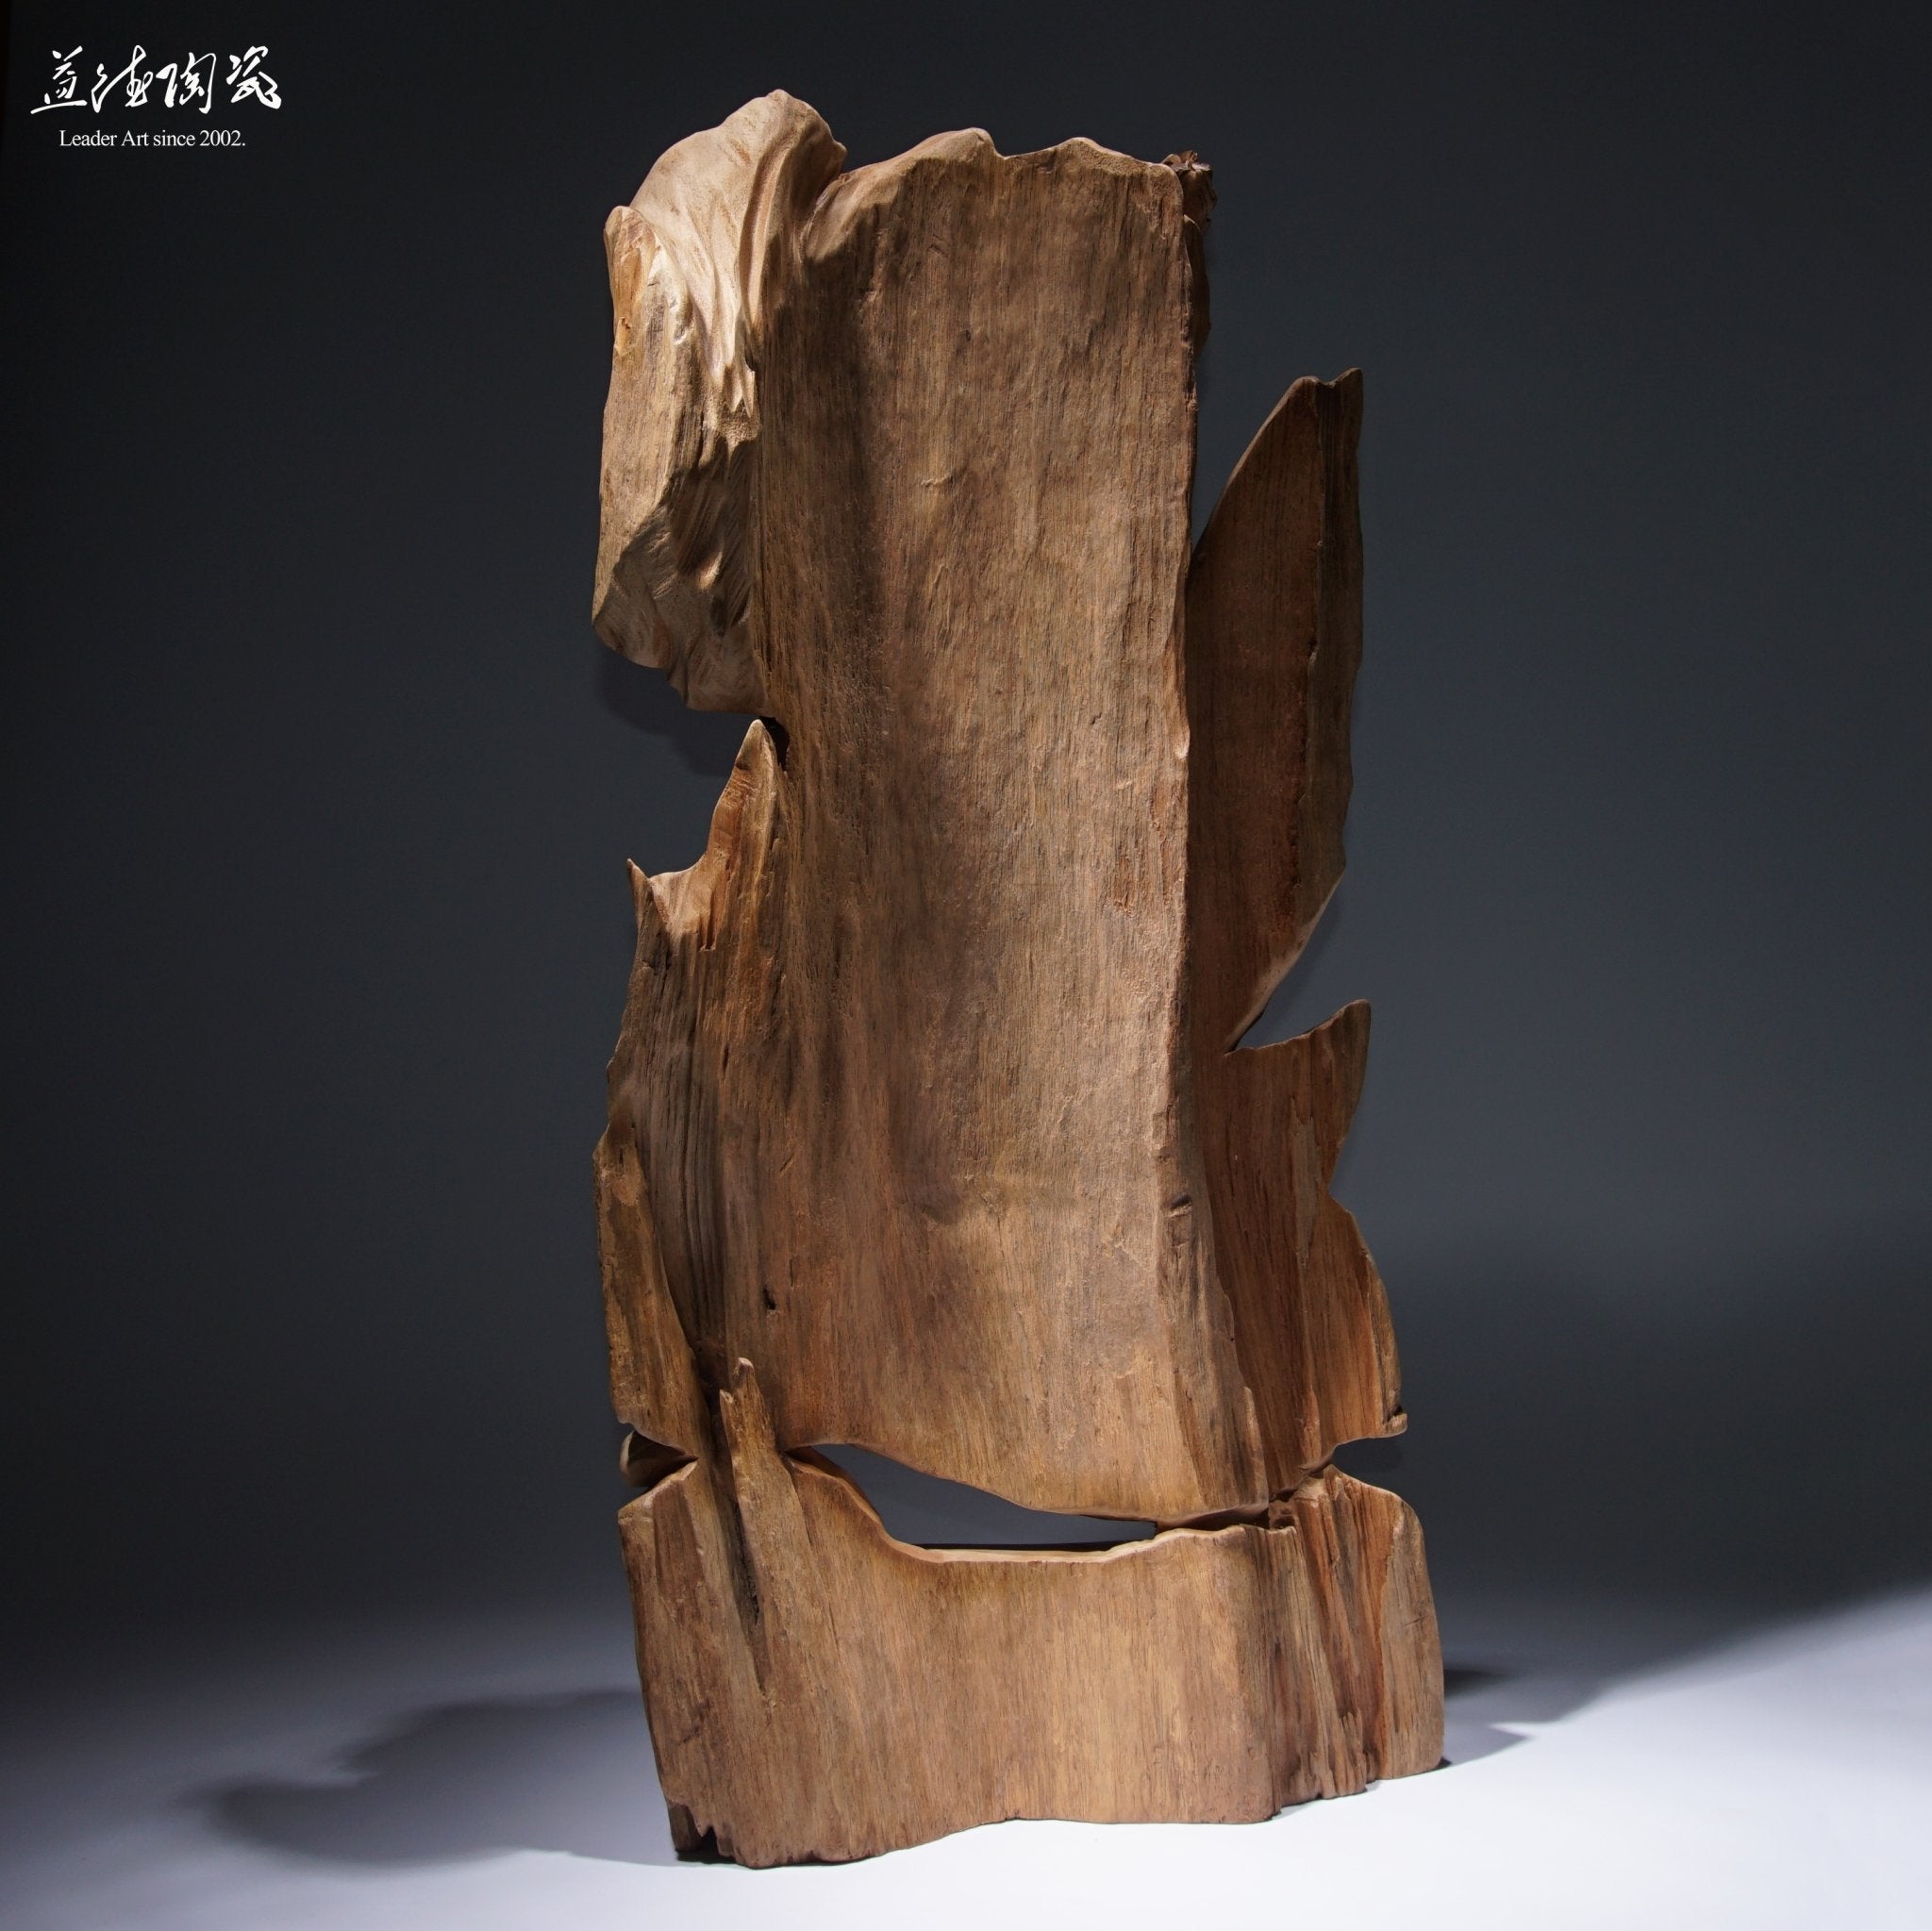 武達摩不倒翁-工藝之家木雕[訂製] – LEADER 益德| 鶯歌陶瓷人文茶器 